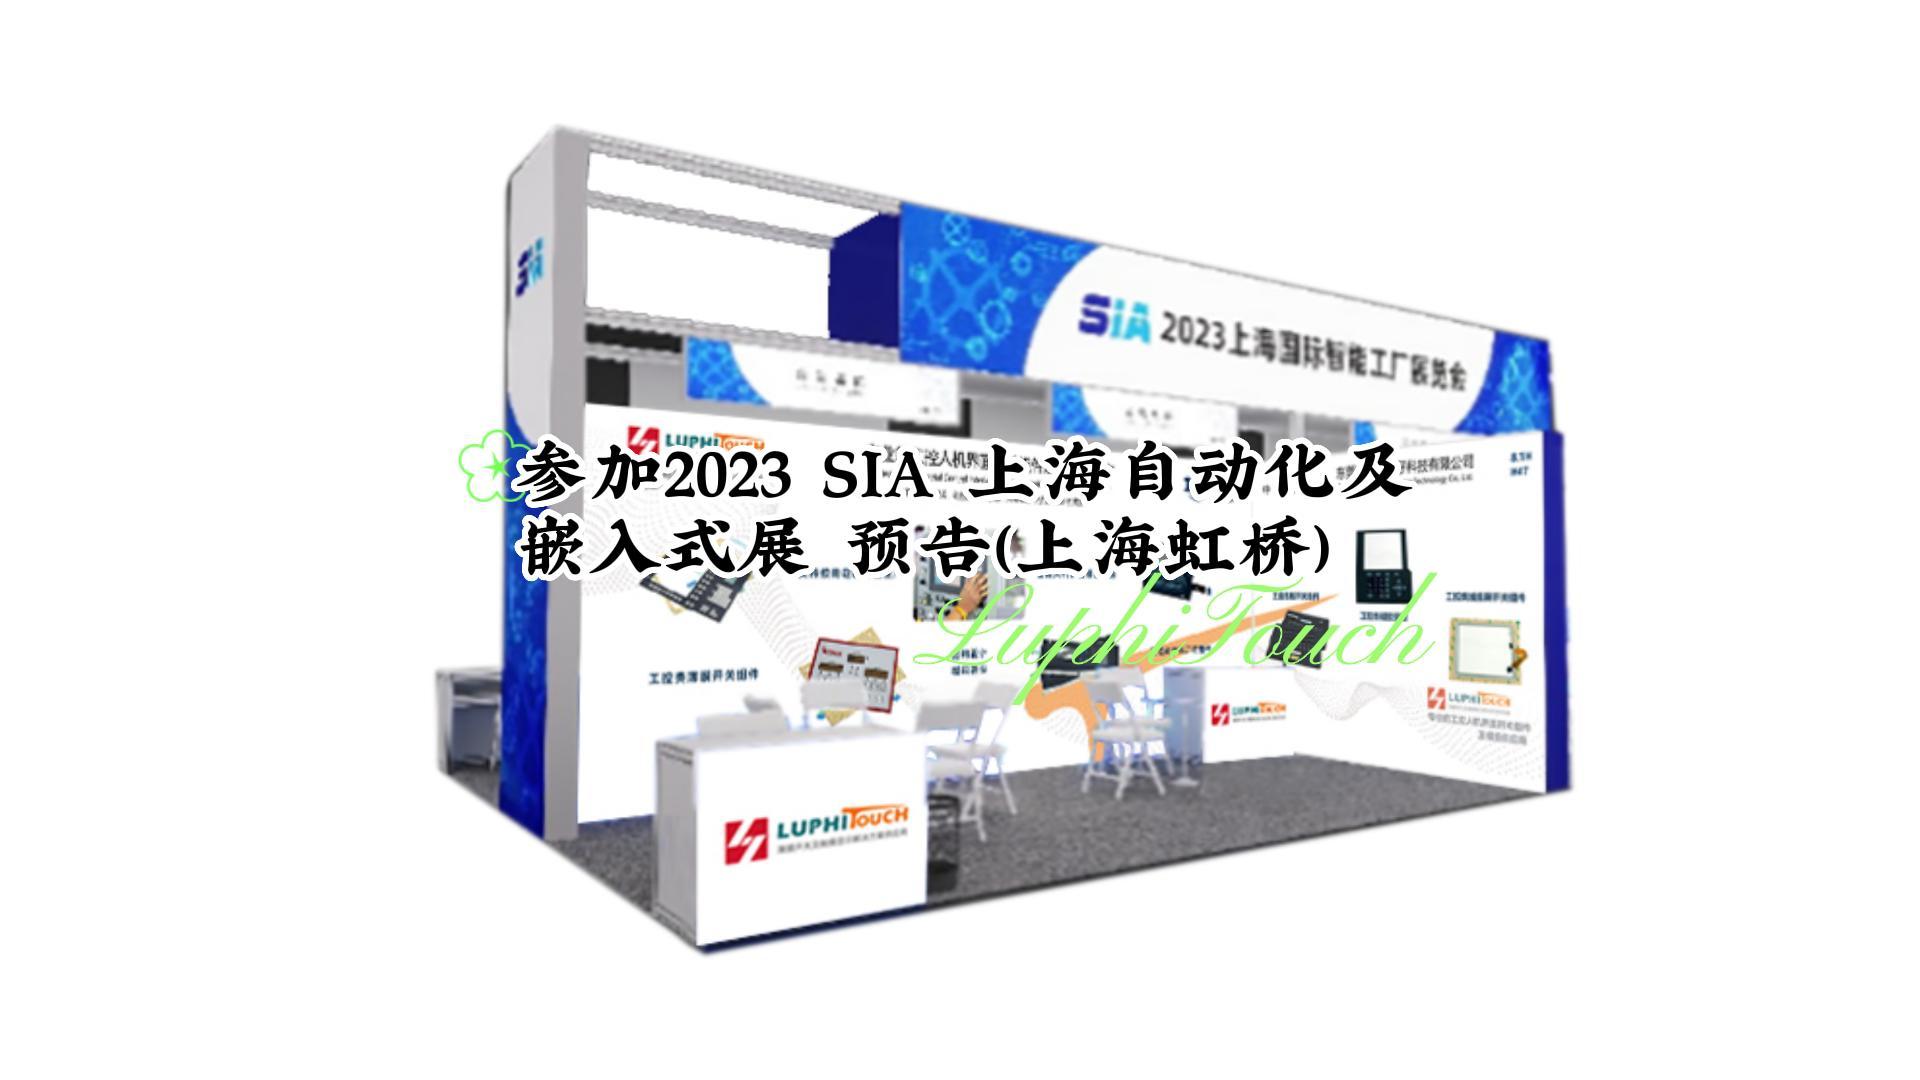  雨菲电子参加2023 SIA 上海自动化及嵌入式展(上海虹桥) #上海自动化及 